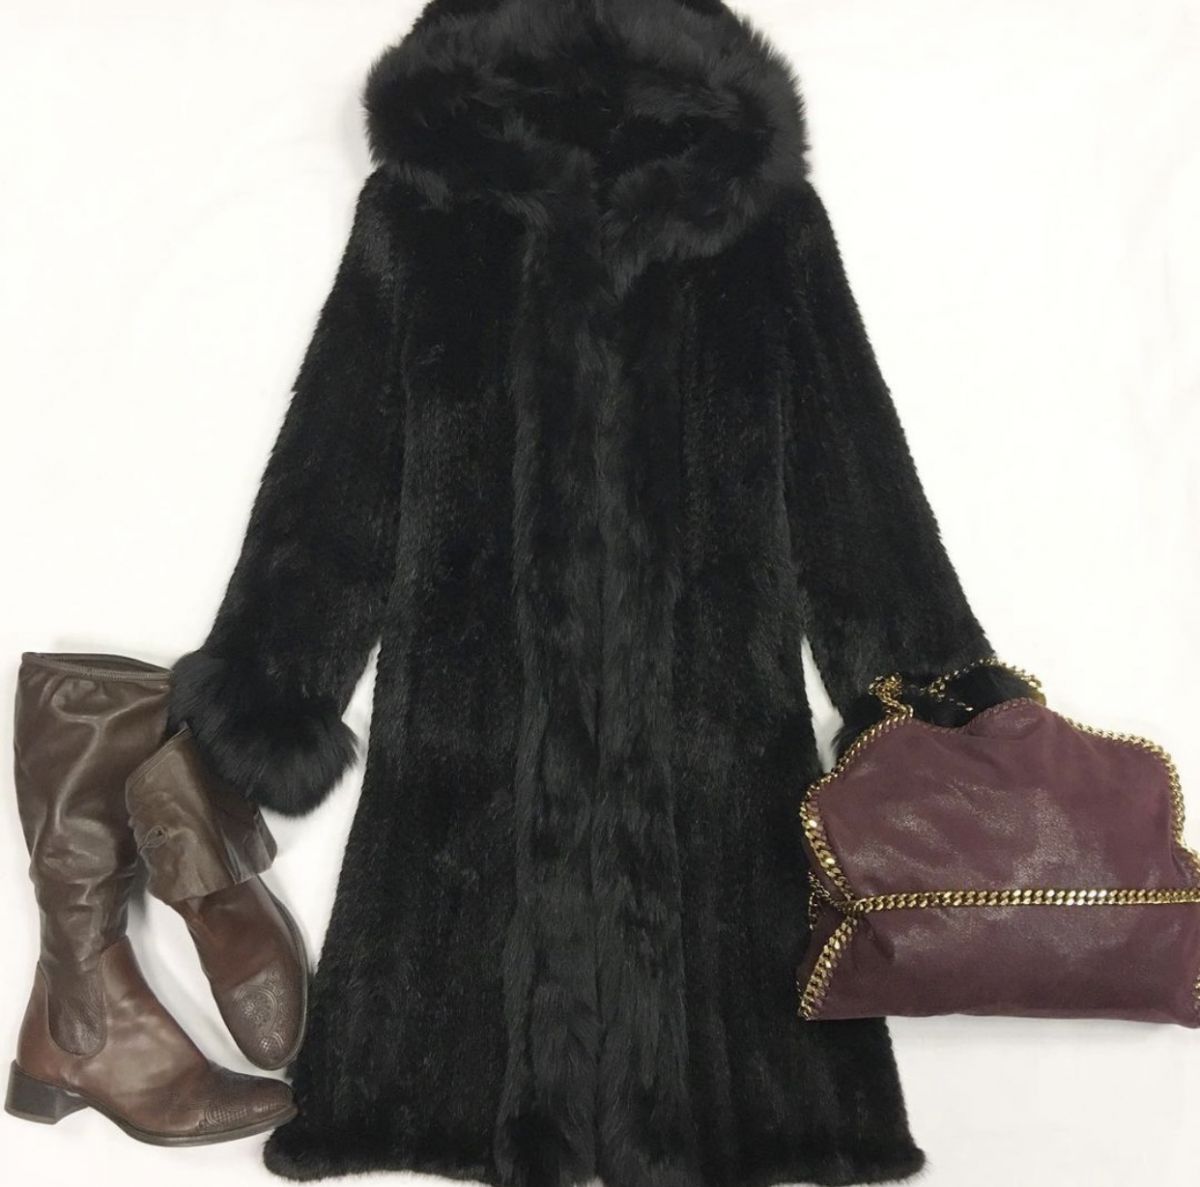 Пальто вязанная норка размер 38 цена 30 770 рубСапоги Prada размер 35.5 цена 7 693 руб Сумка Stellamaccrtney